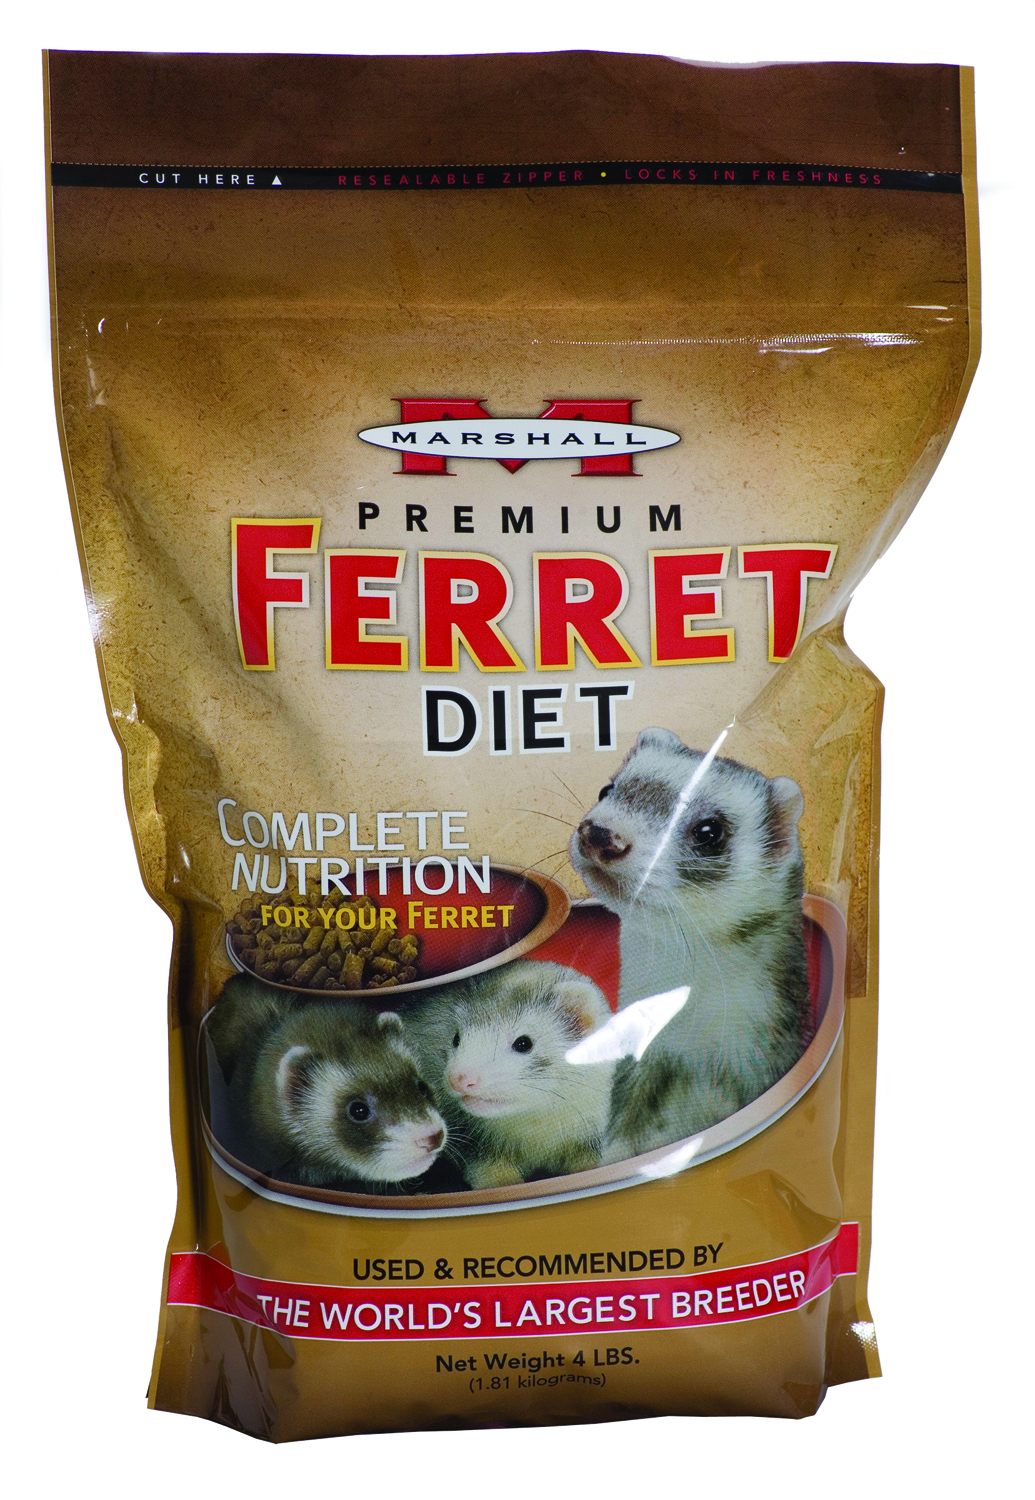 Premium Ferret Diet 4#